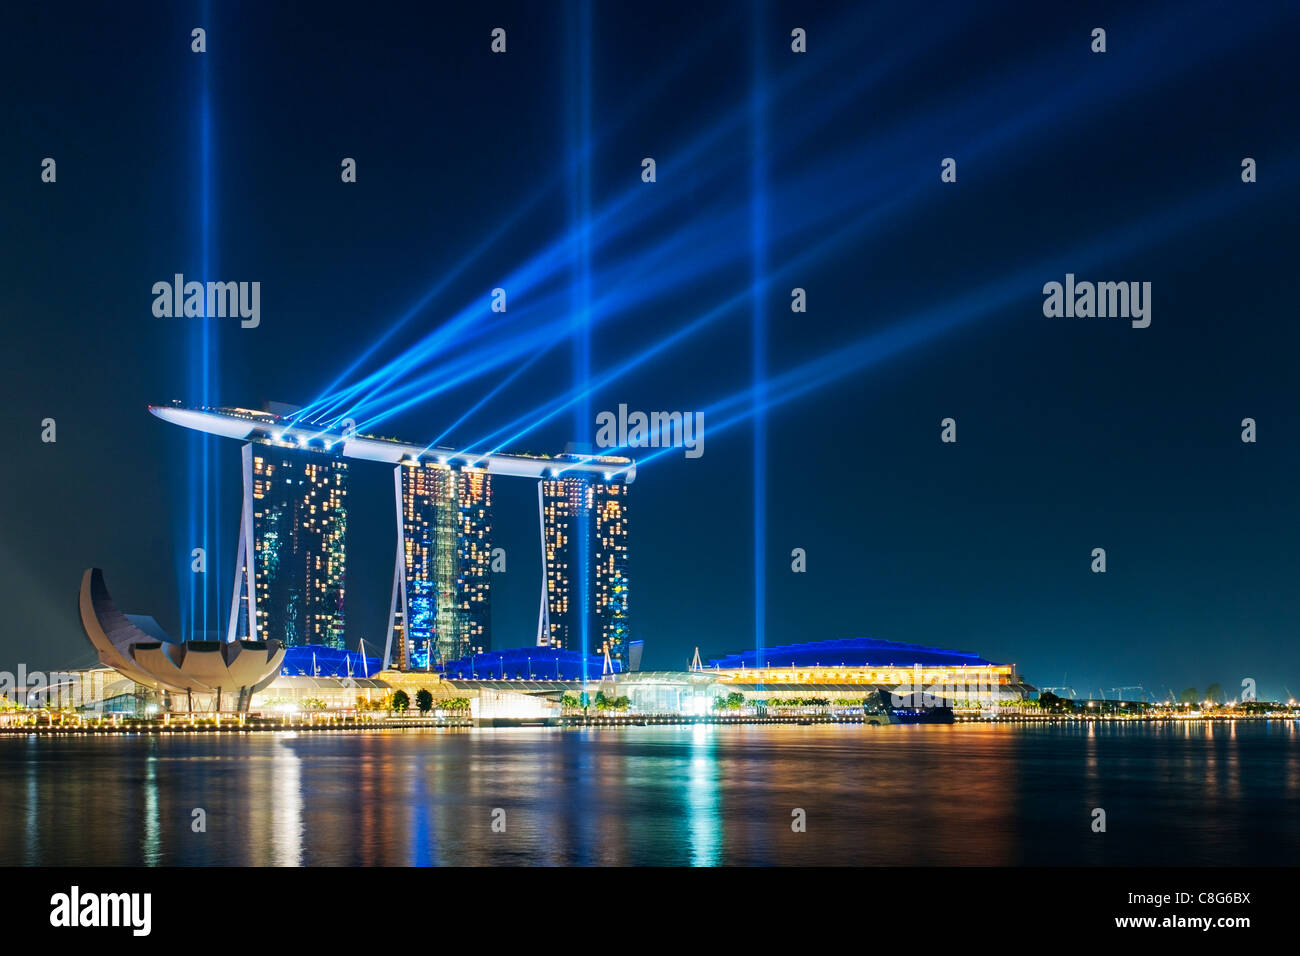 Nächtlichen Licht und Wasser zeigen, "Voller Wunder", mit dem Laser an der Marina Bay Sands Hotel, Singapur Stockfoto